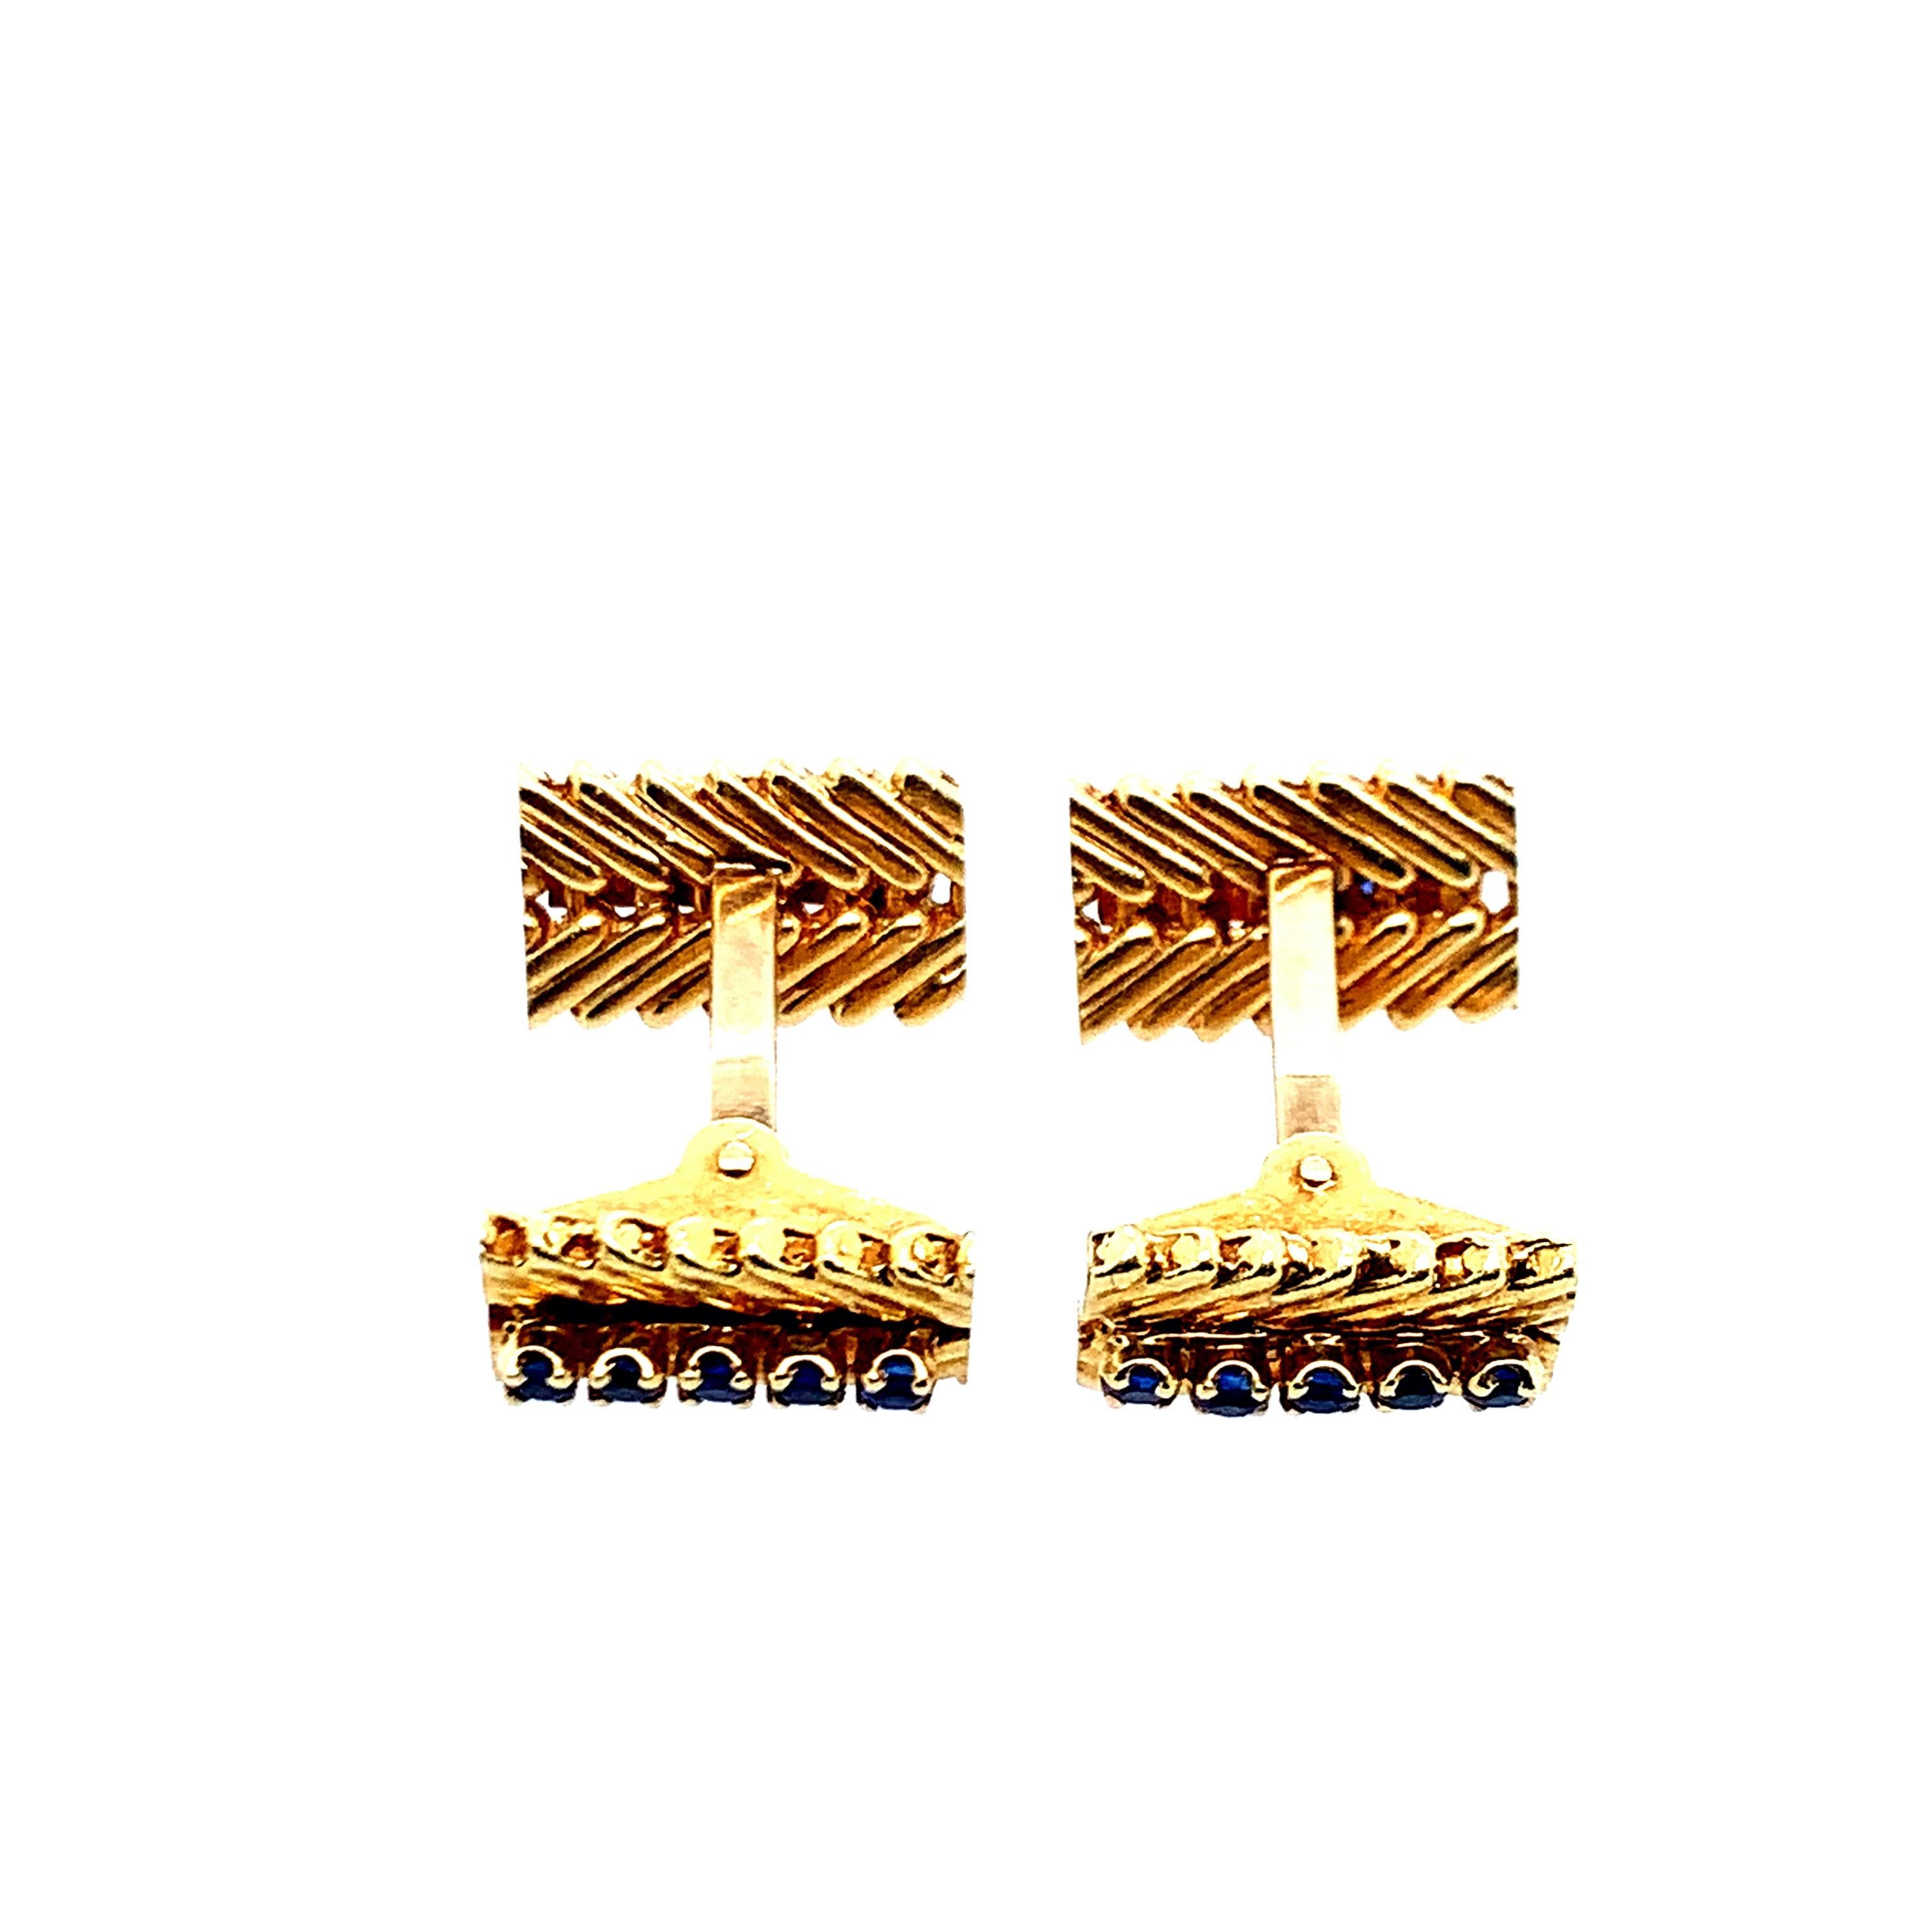 Diese Manschettenknöpfe aus 18 Karat Gold, signiert Van Cleef & Arpels NY, sind in der Mitte mit Saphiren besetzt. Gesamtgewicht: 16,8 Gramm. Länge: 2,5 cm. 

Serien-Nr. 12V25-16 